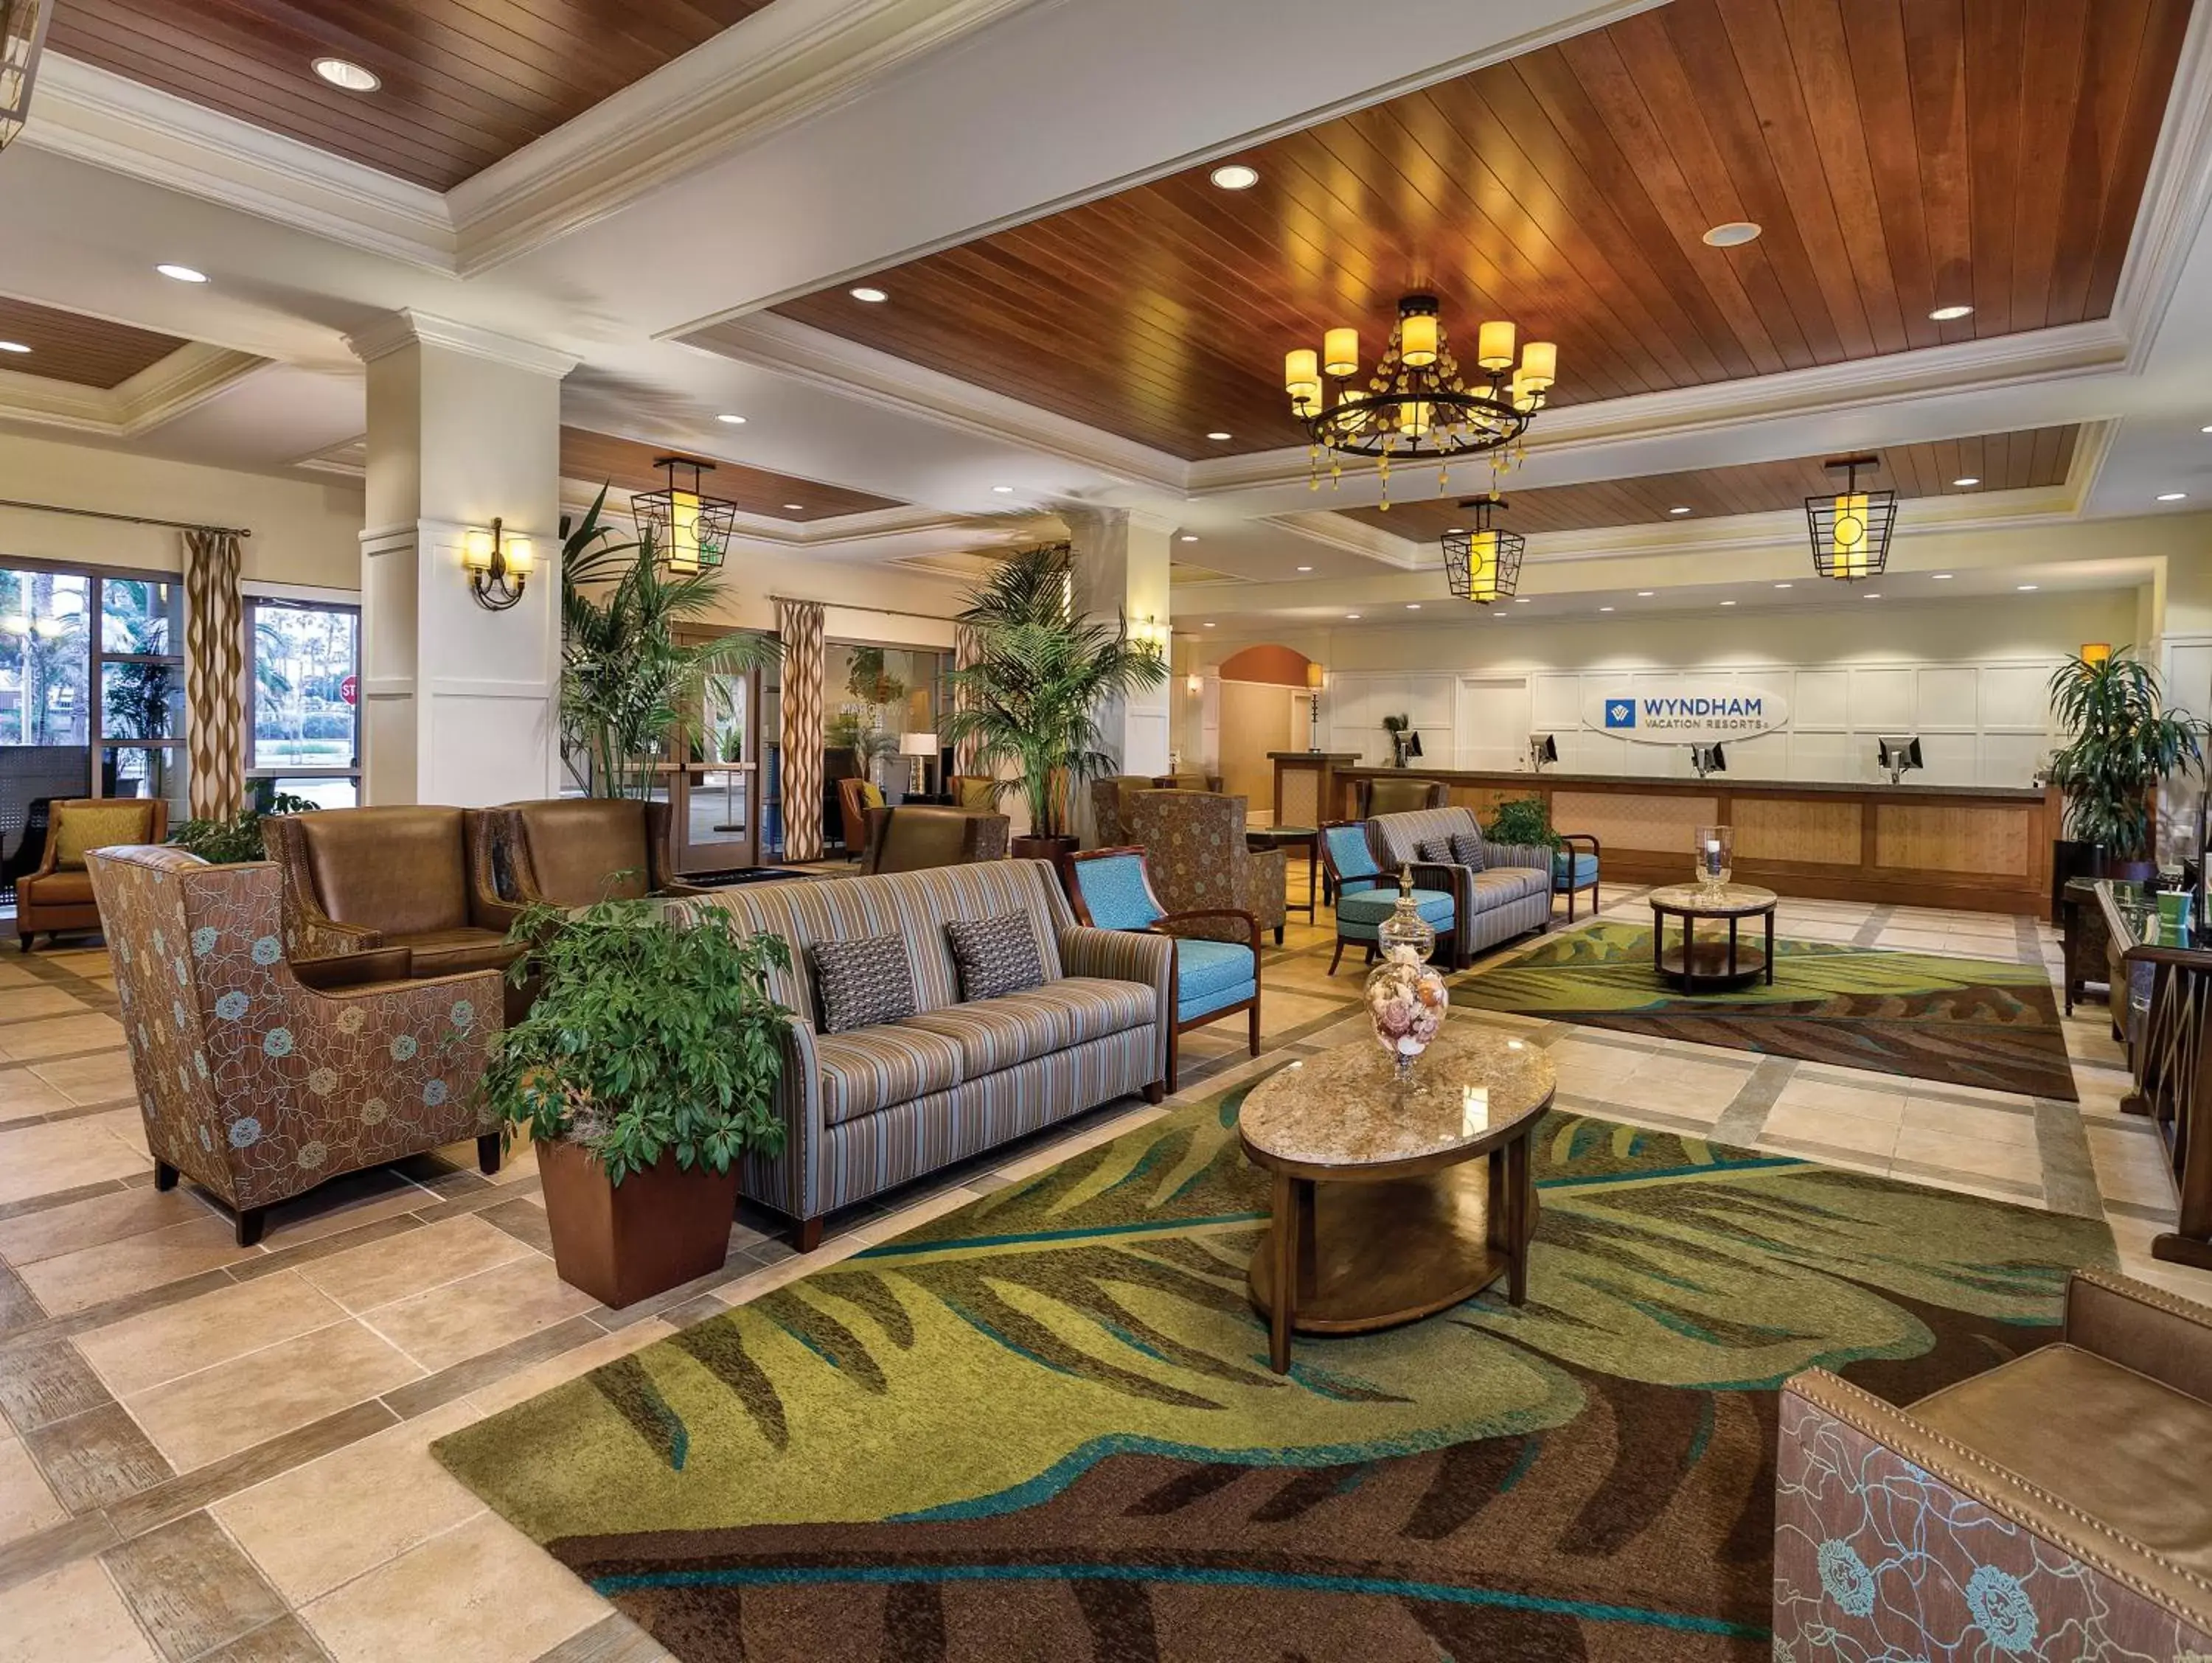 Lobby or reception, Lobby/Reception in Club Wyndham Oceanside Pier Resort